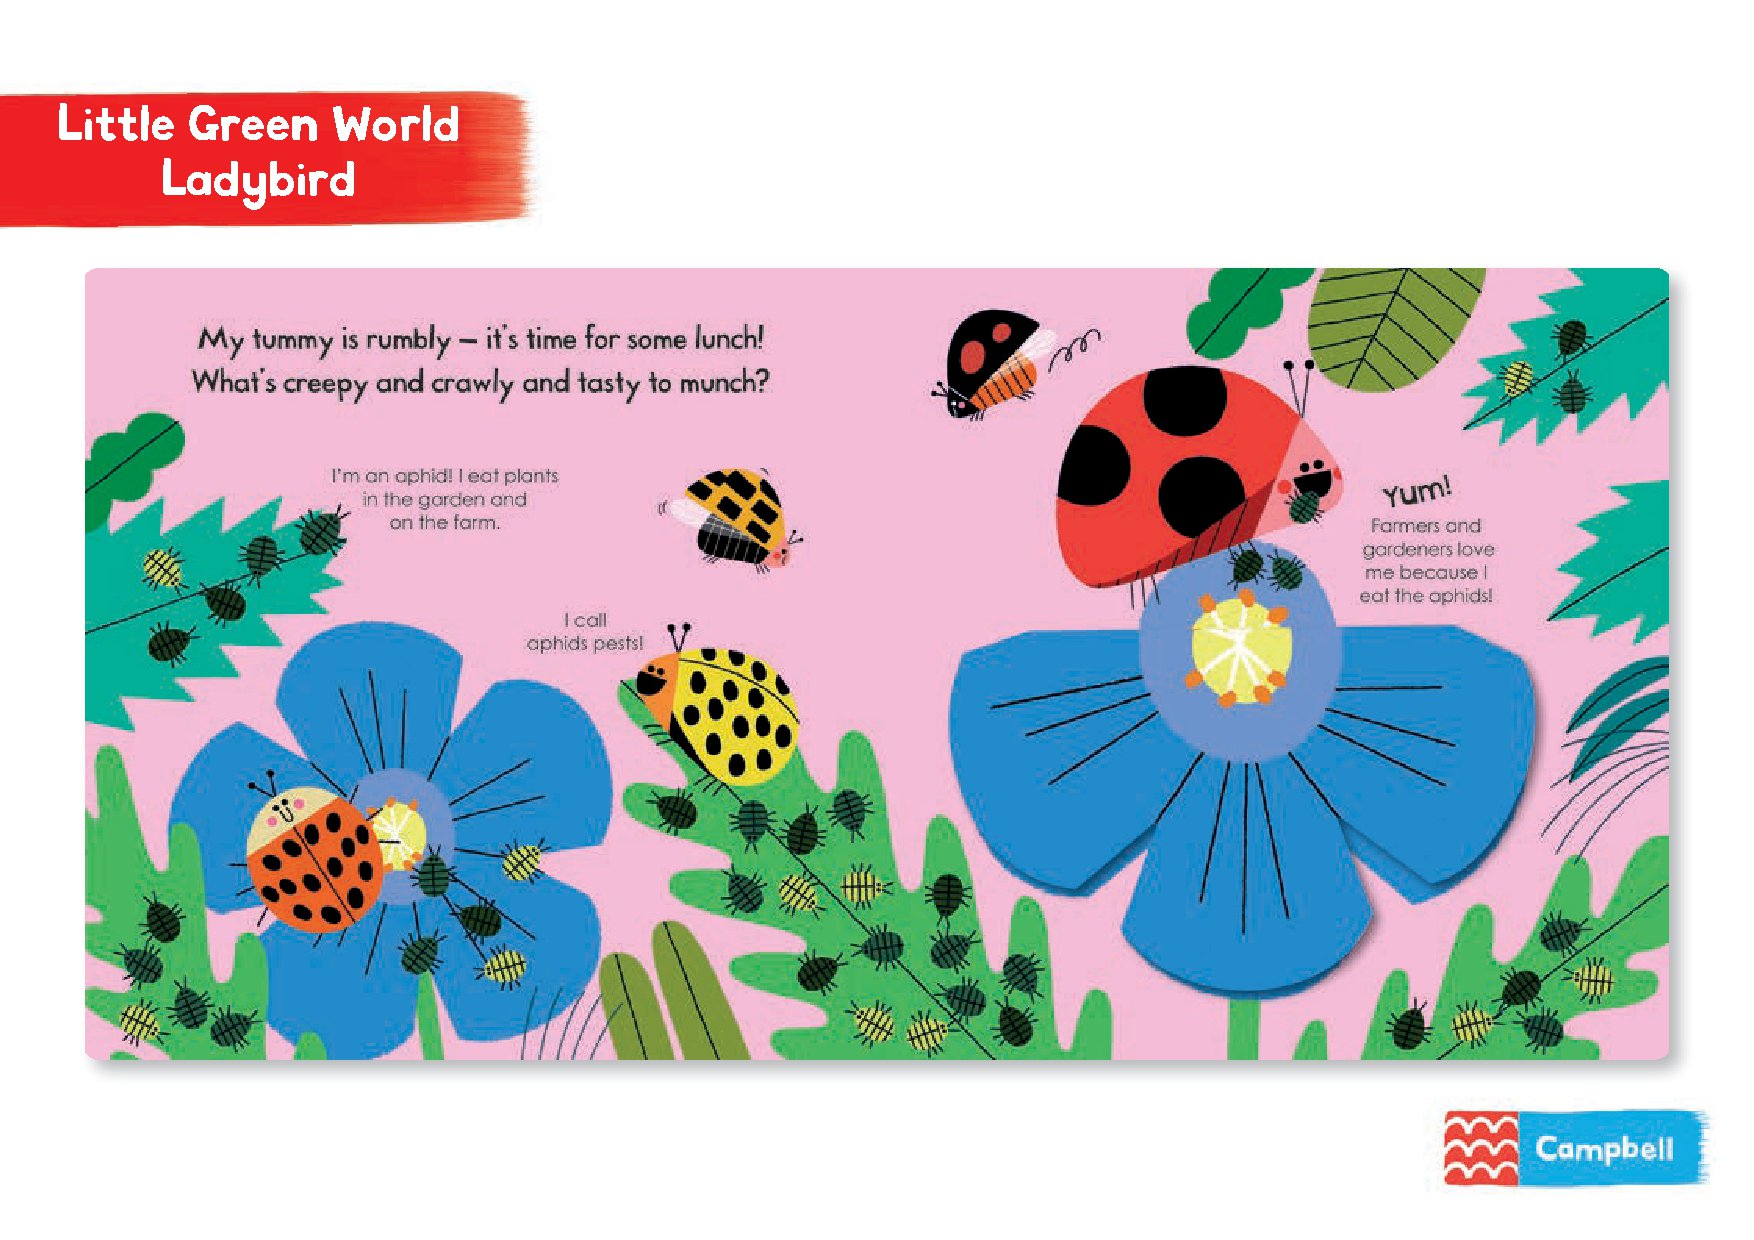 My Little Green World: Ladybird